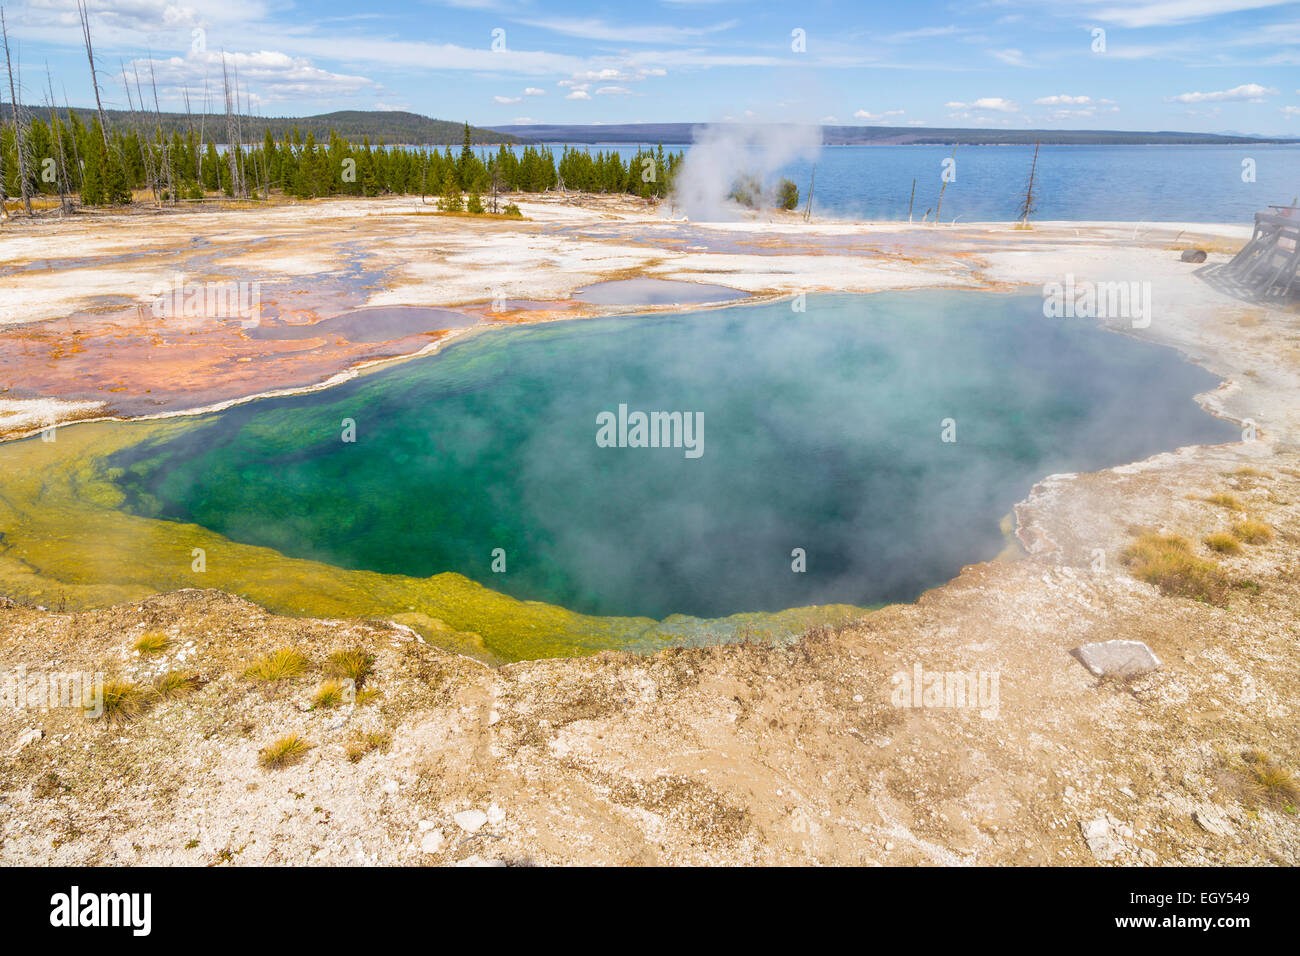 Le Parc National de Yellowstone, Wyoming, United States 20 Septembre 2014 - Le Lac Yellowstone en arrière-plan et une piscine géothermique Banque D'Images